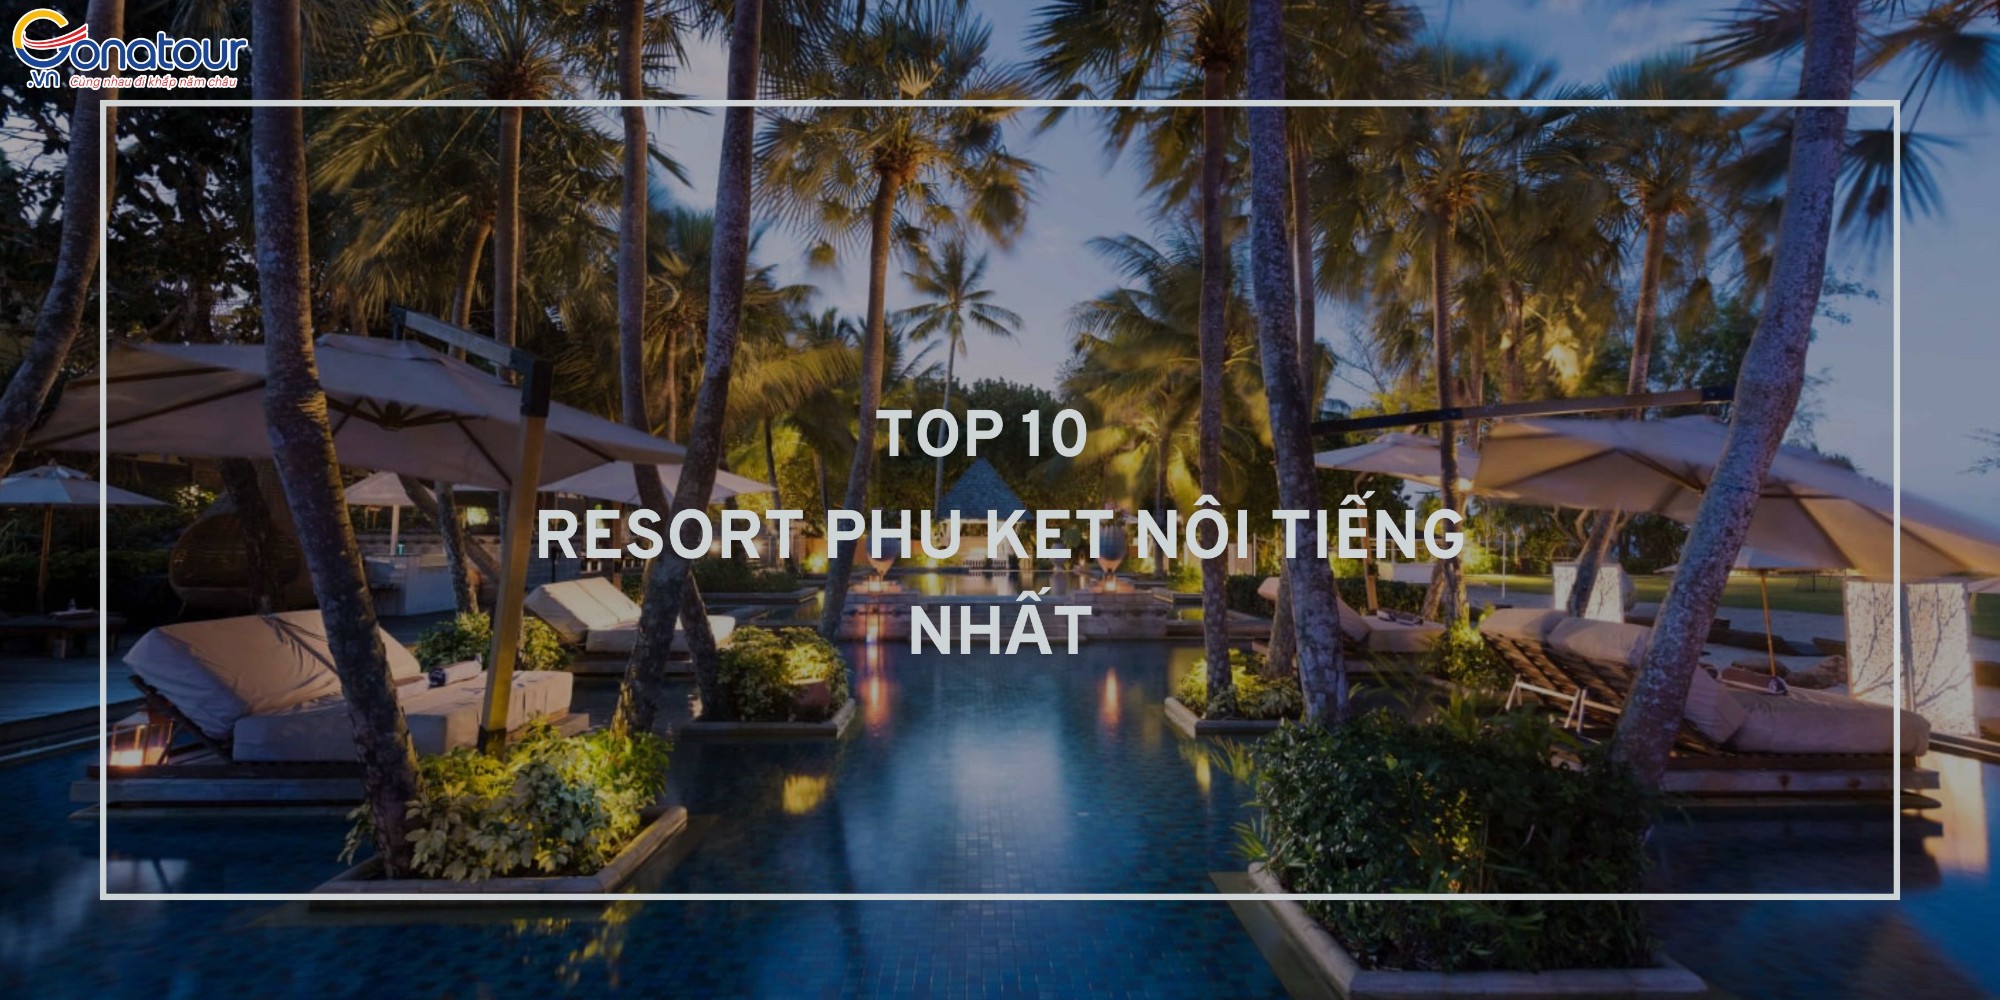 Top 10 Resort Phuket được lưu trú nhiều nhất